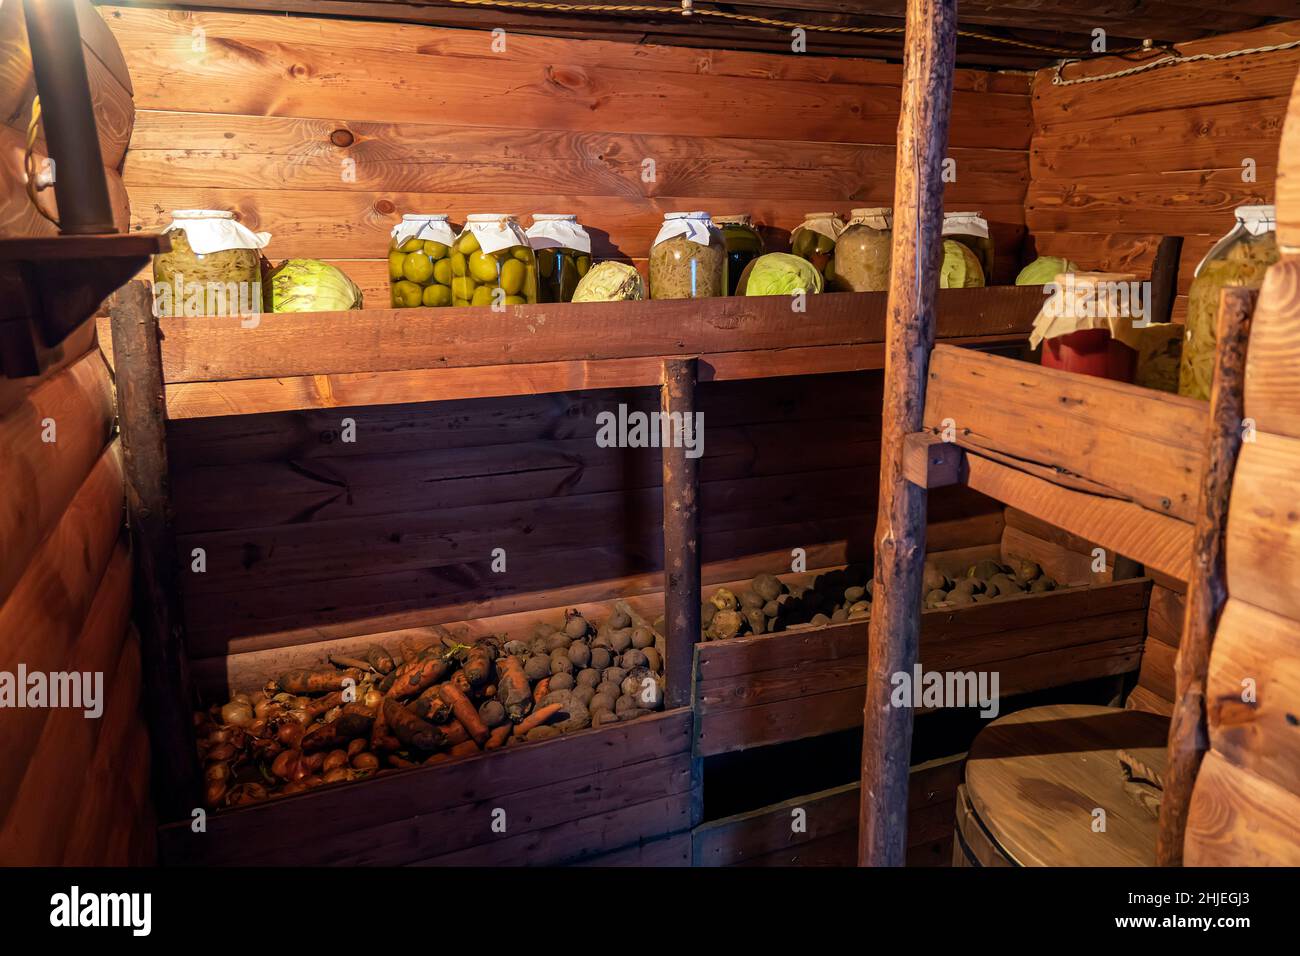 Conservazione delle verdure in una cantina calda per il periodo invernale. Vasetti di vetro con cetrioli sottaceto sulla mensola. Foto Stock